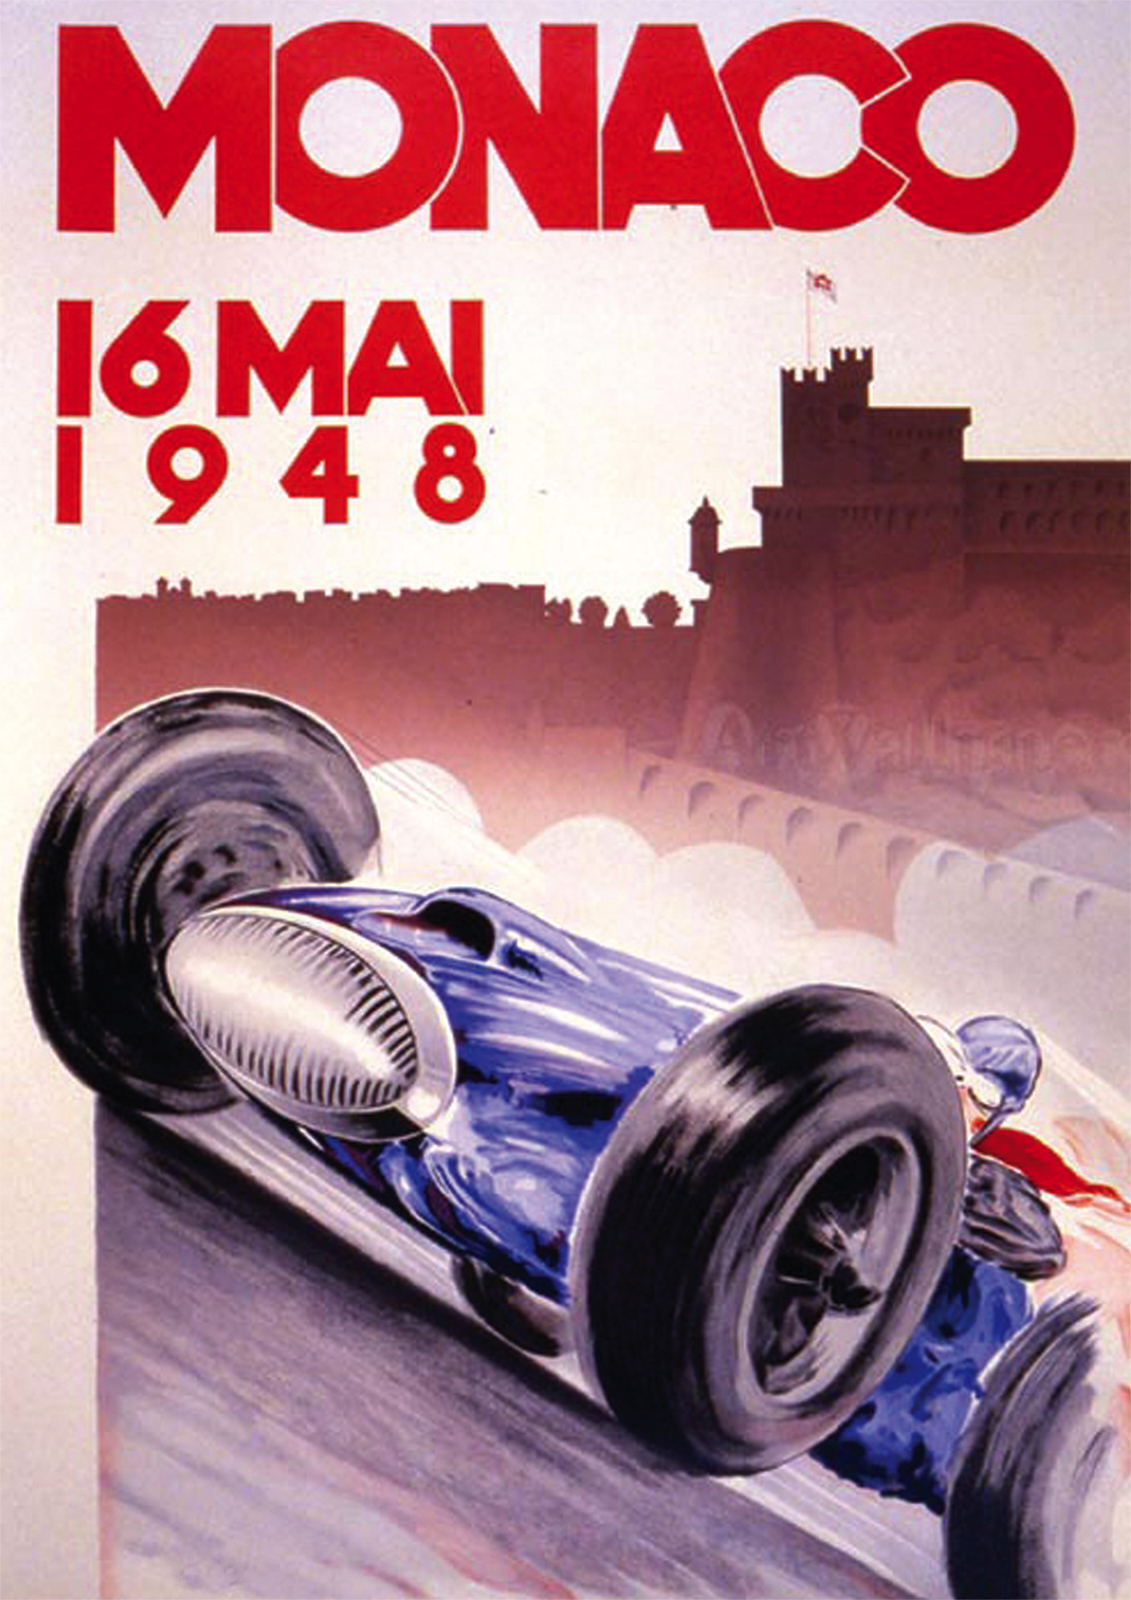 Monaco Grand Prix F1 1948 Repro POSTER